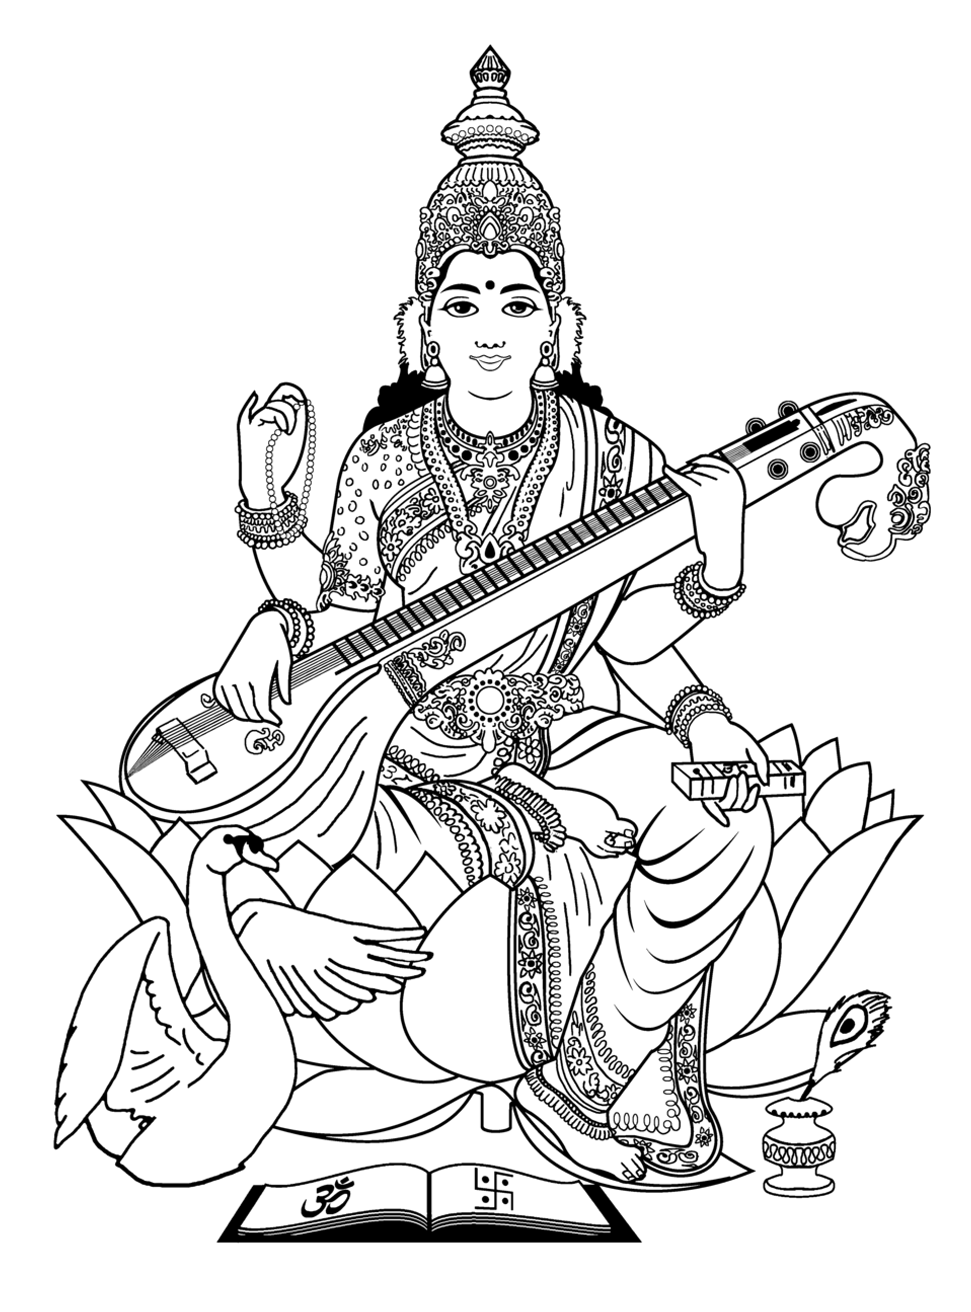 Image de la déesse de la Connaissance et des Arts : Saraswati . Noir et blanc sans nuance de gris